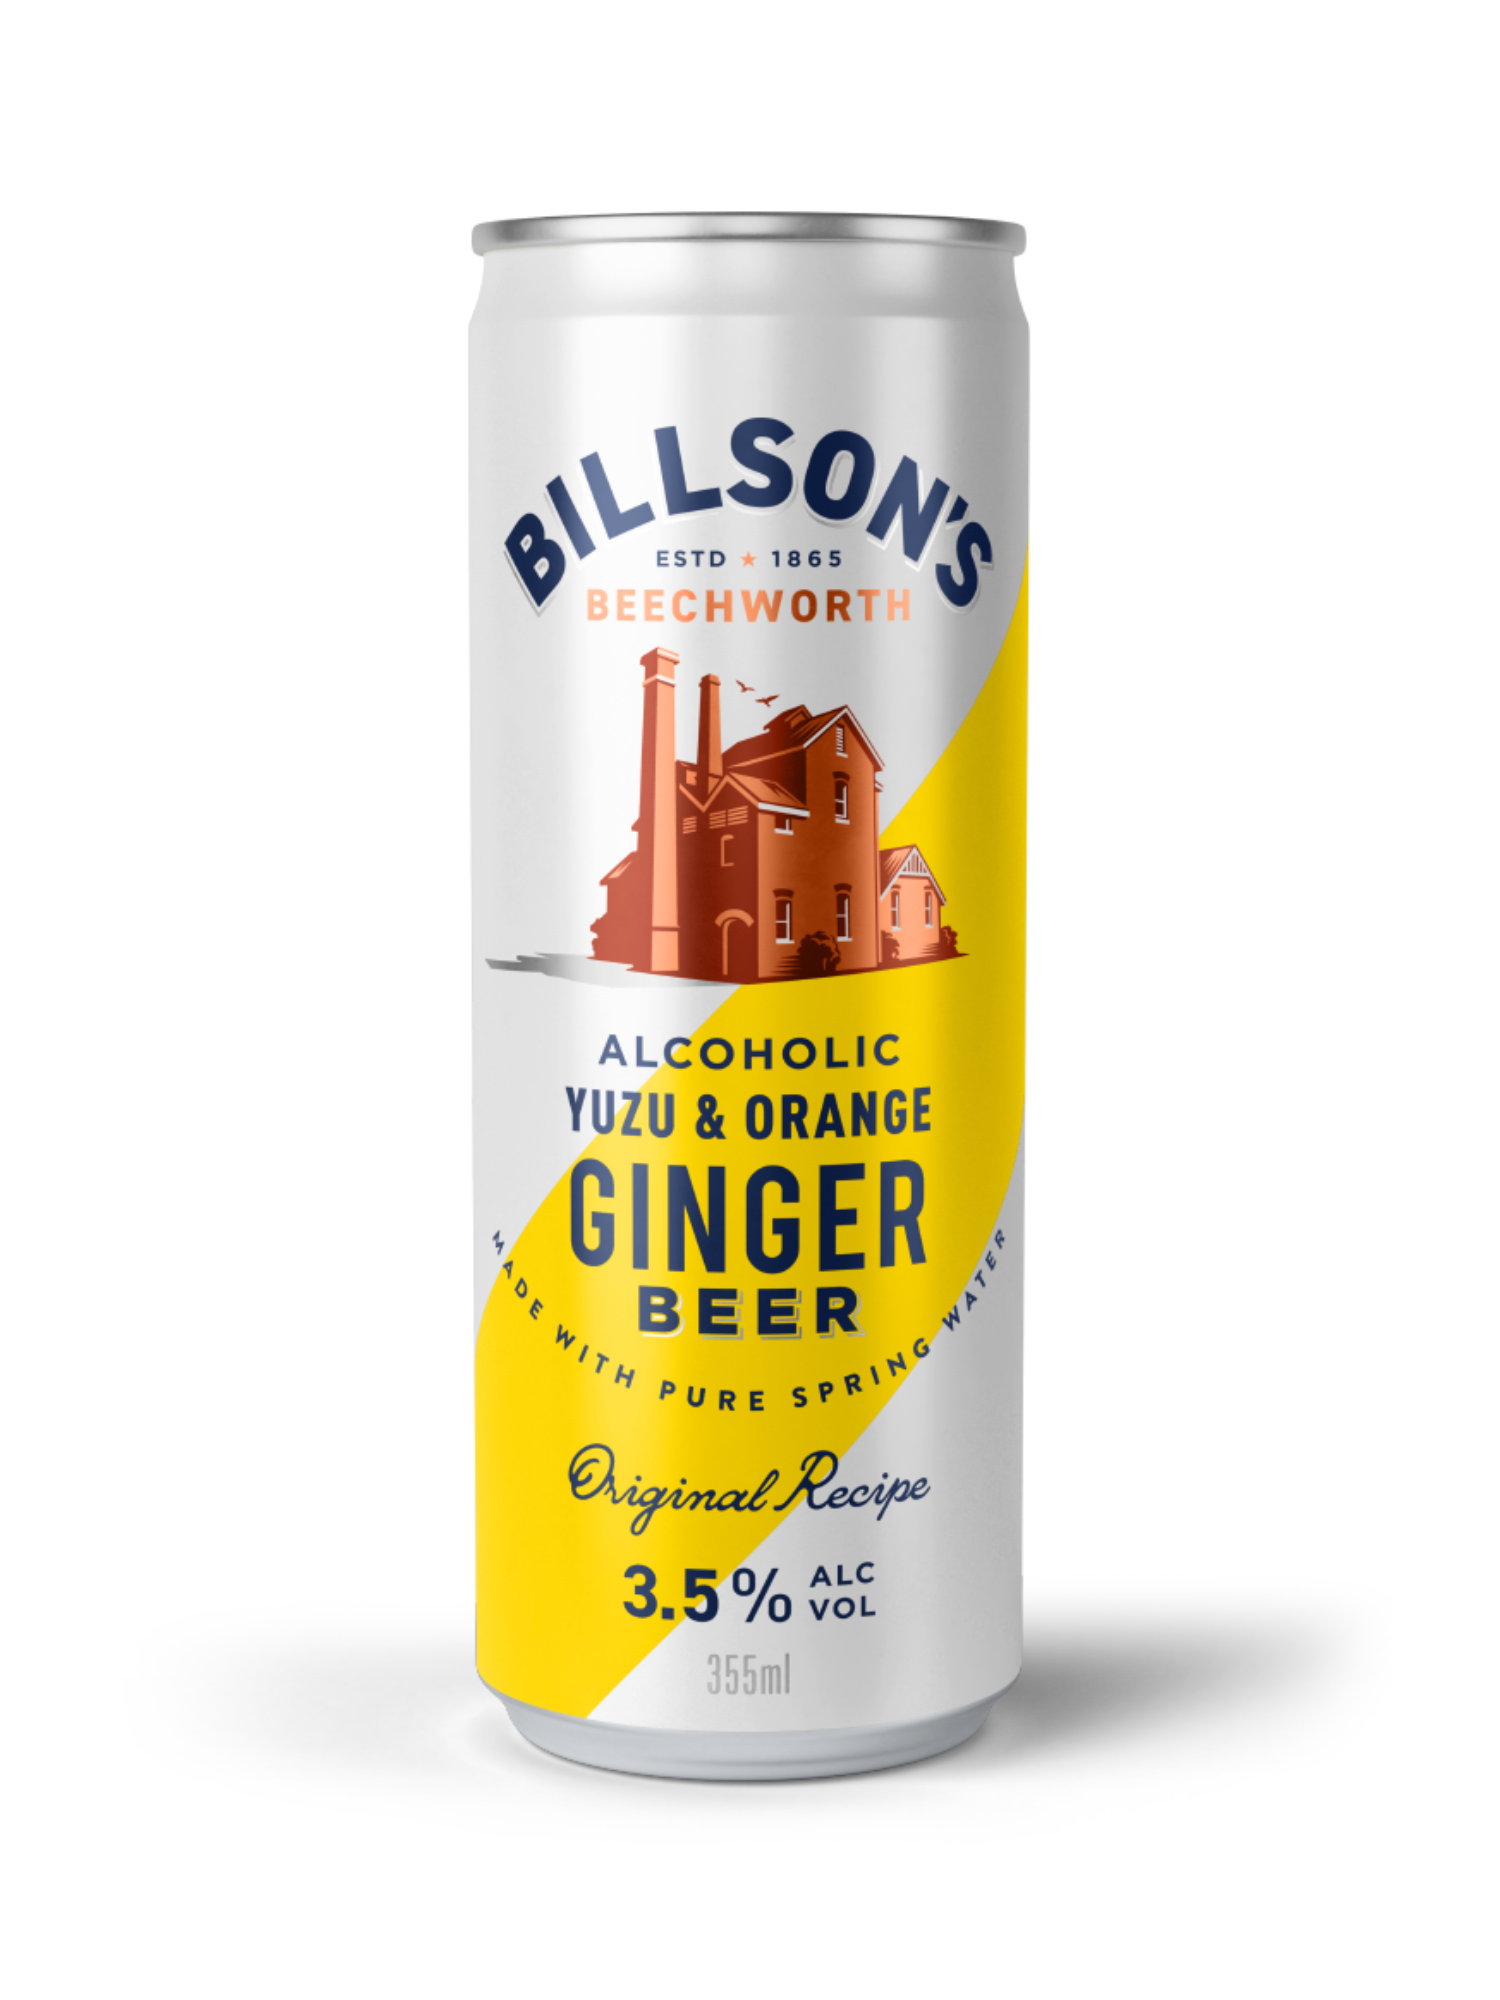 Billson's Ginger Beer with Yuzu & Orange